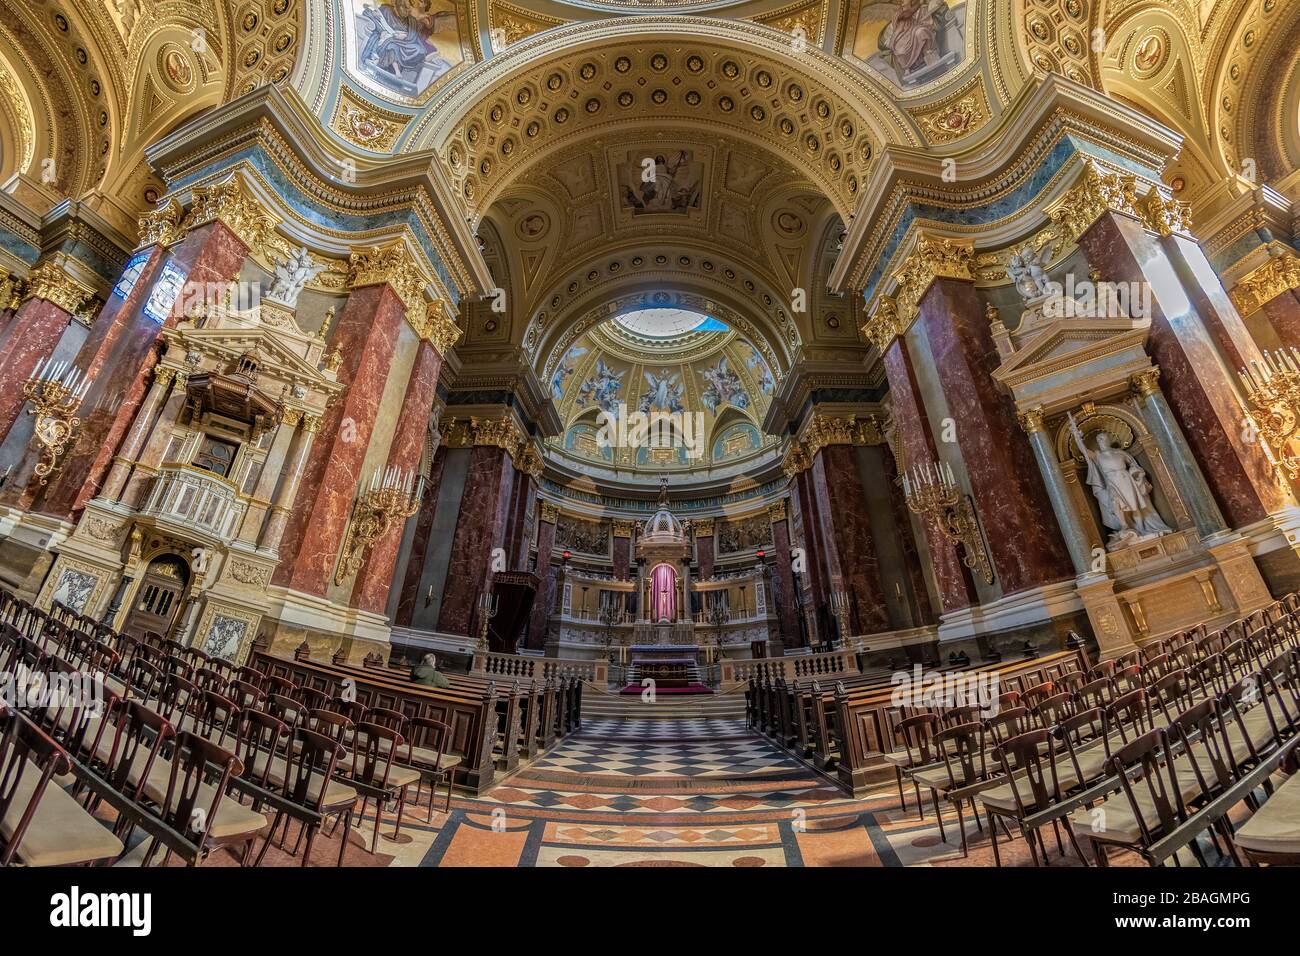 Innenansicht der Stephansbasilika, Kathedrale Budapest, Ungarn. Der Altar der Römisch-katholischen Basilika. Stockfoto